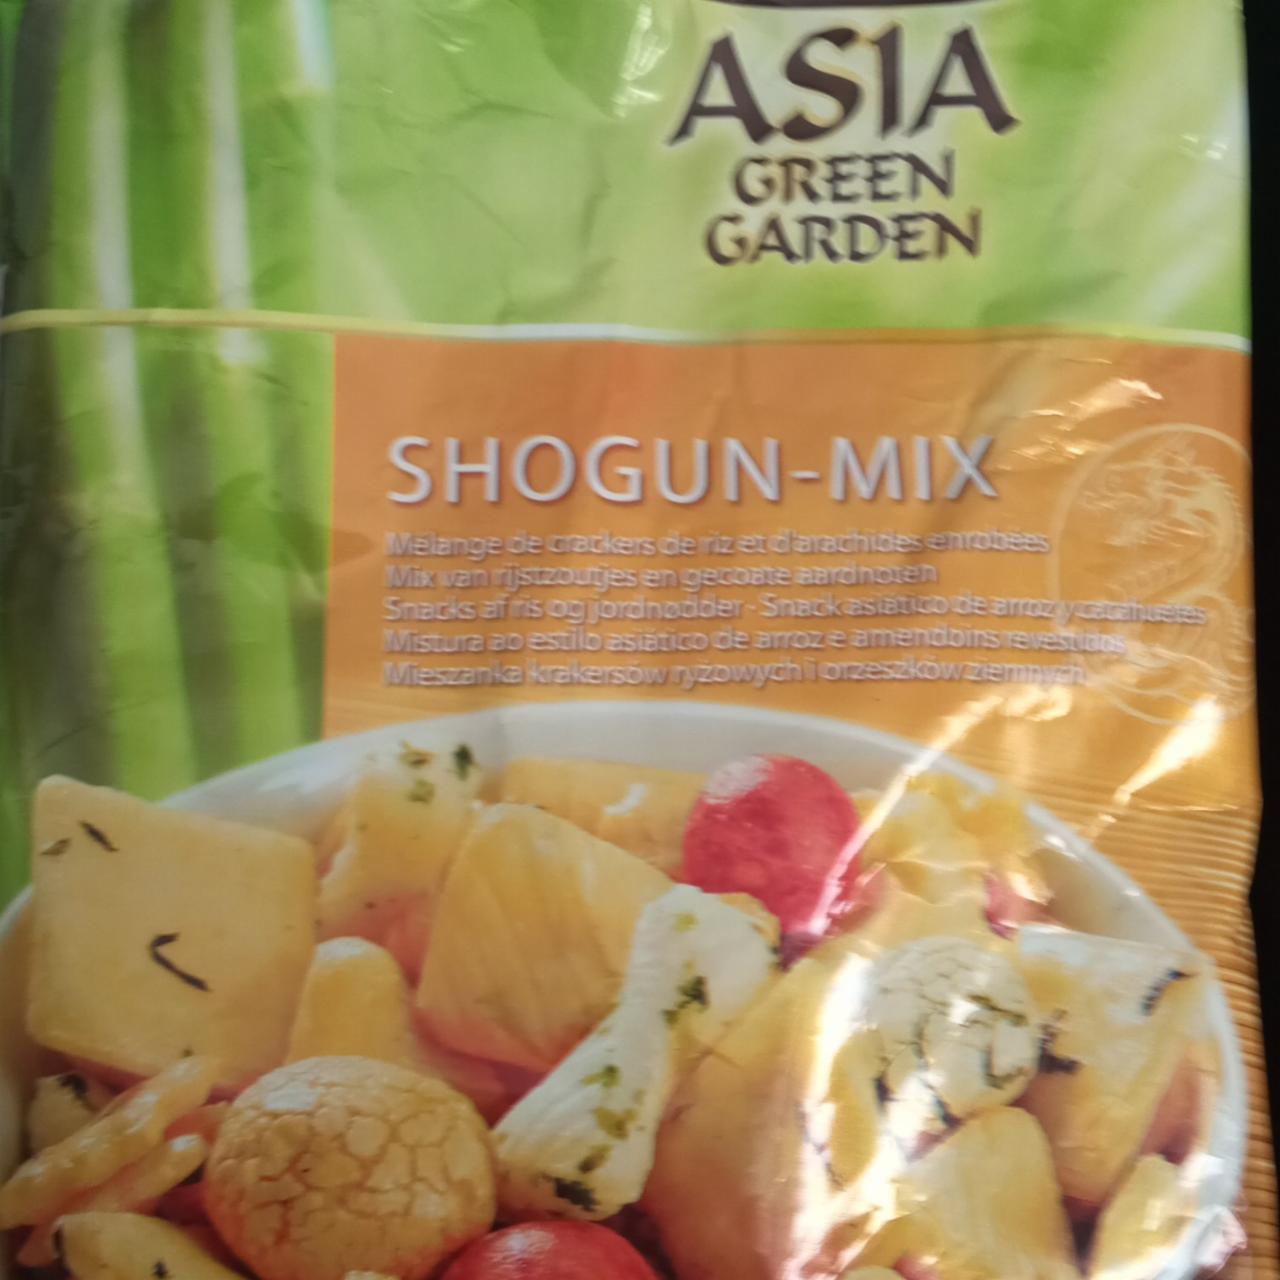 Zdjęcia - Shogun mix Asia green Garden